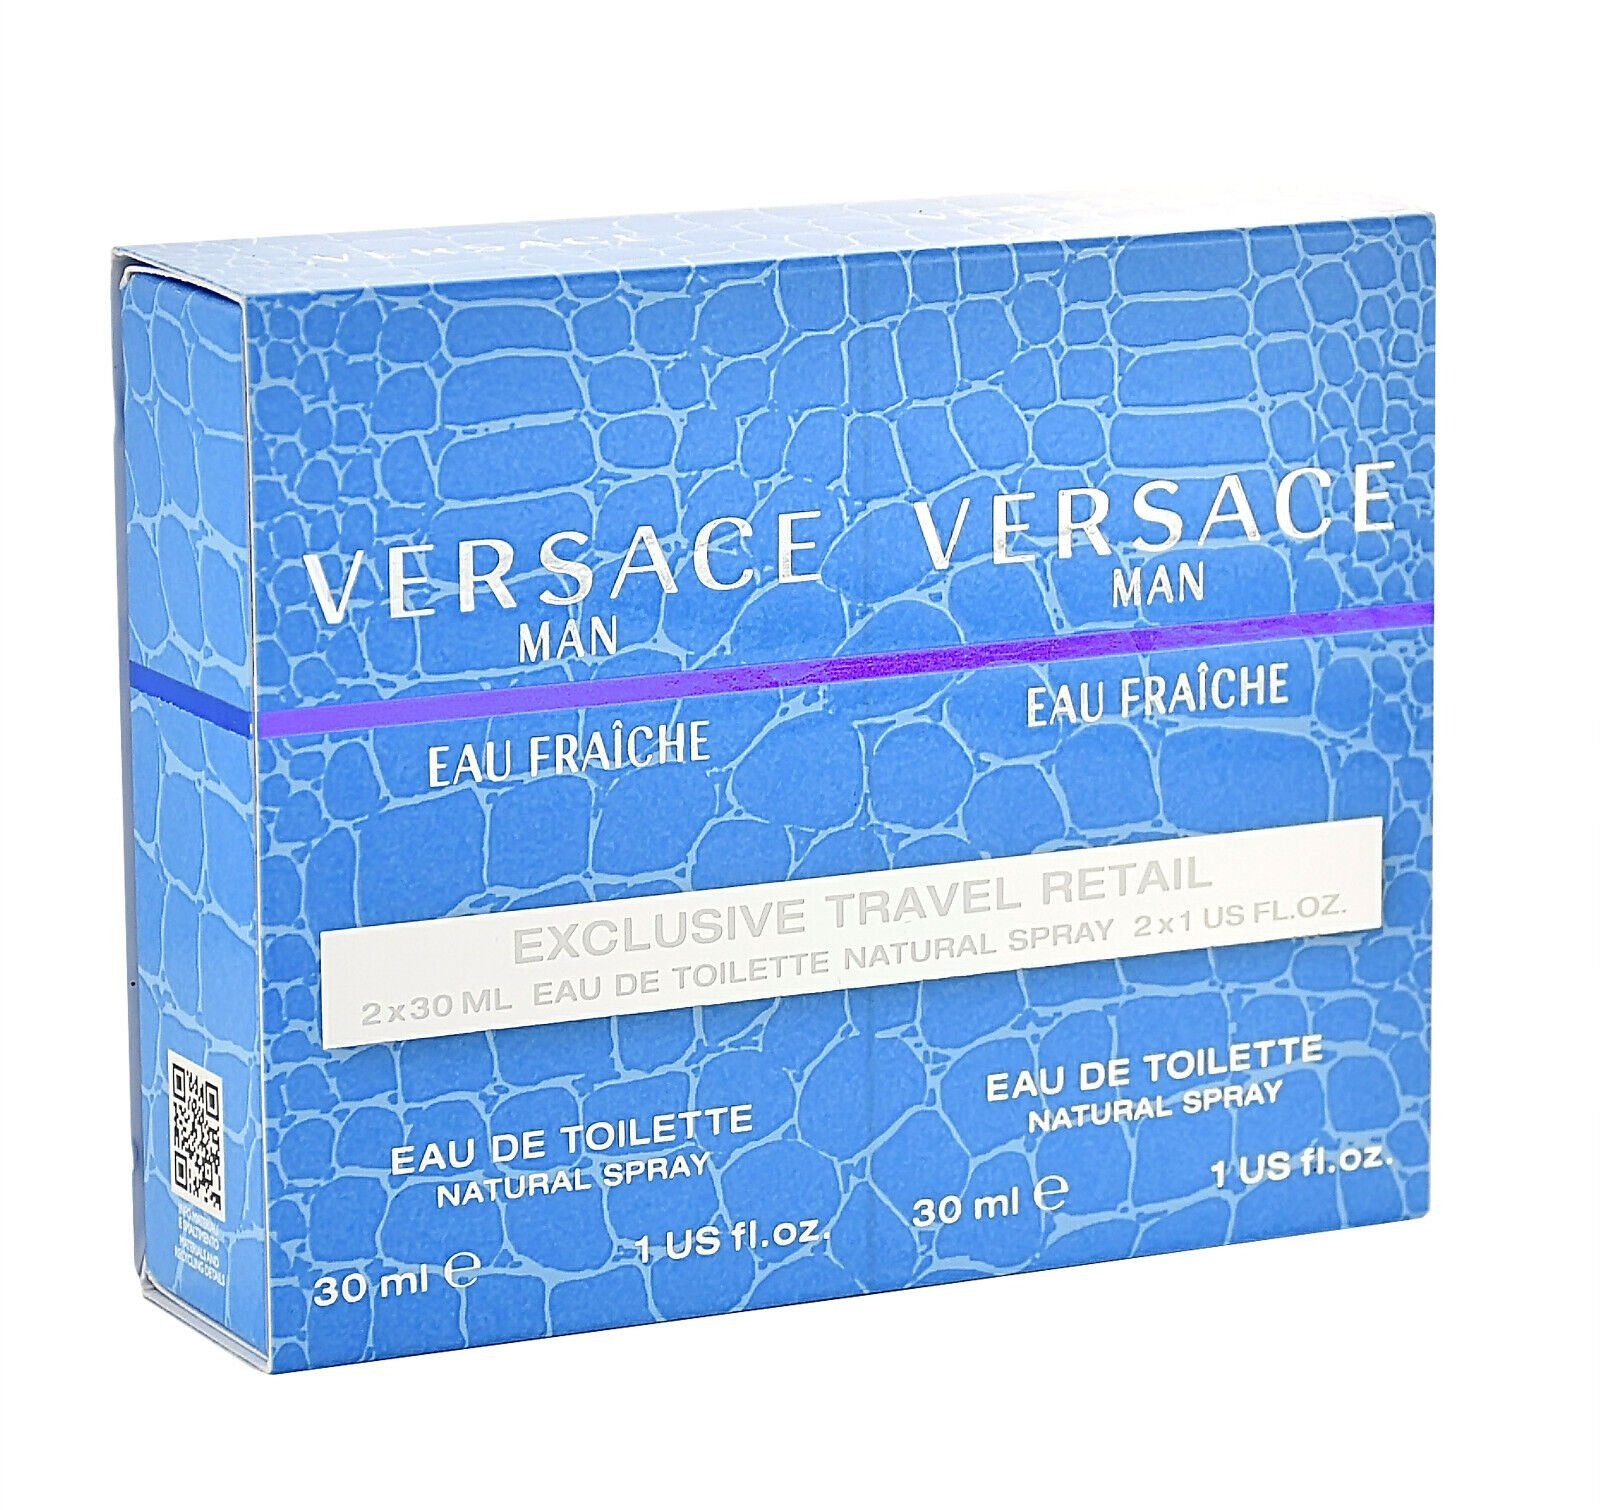 Versace Eau de Toilette Versace Eau Fraiche 2x30ML DUO